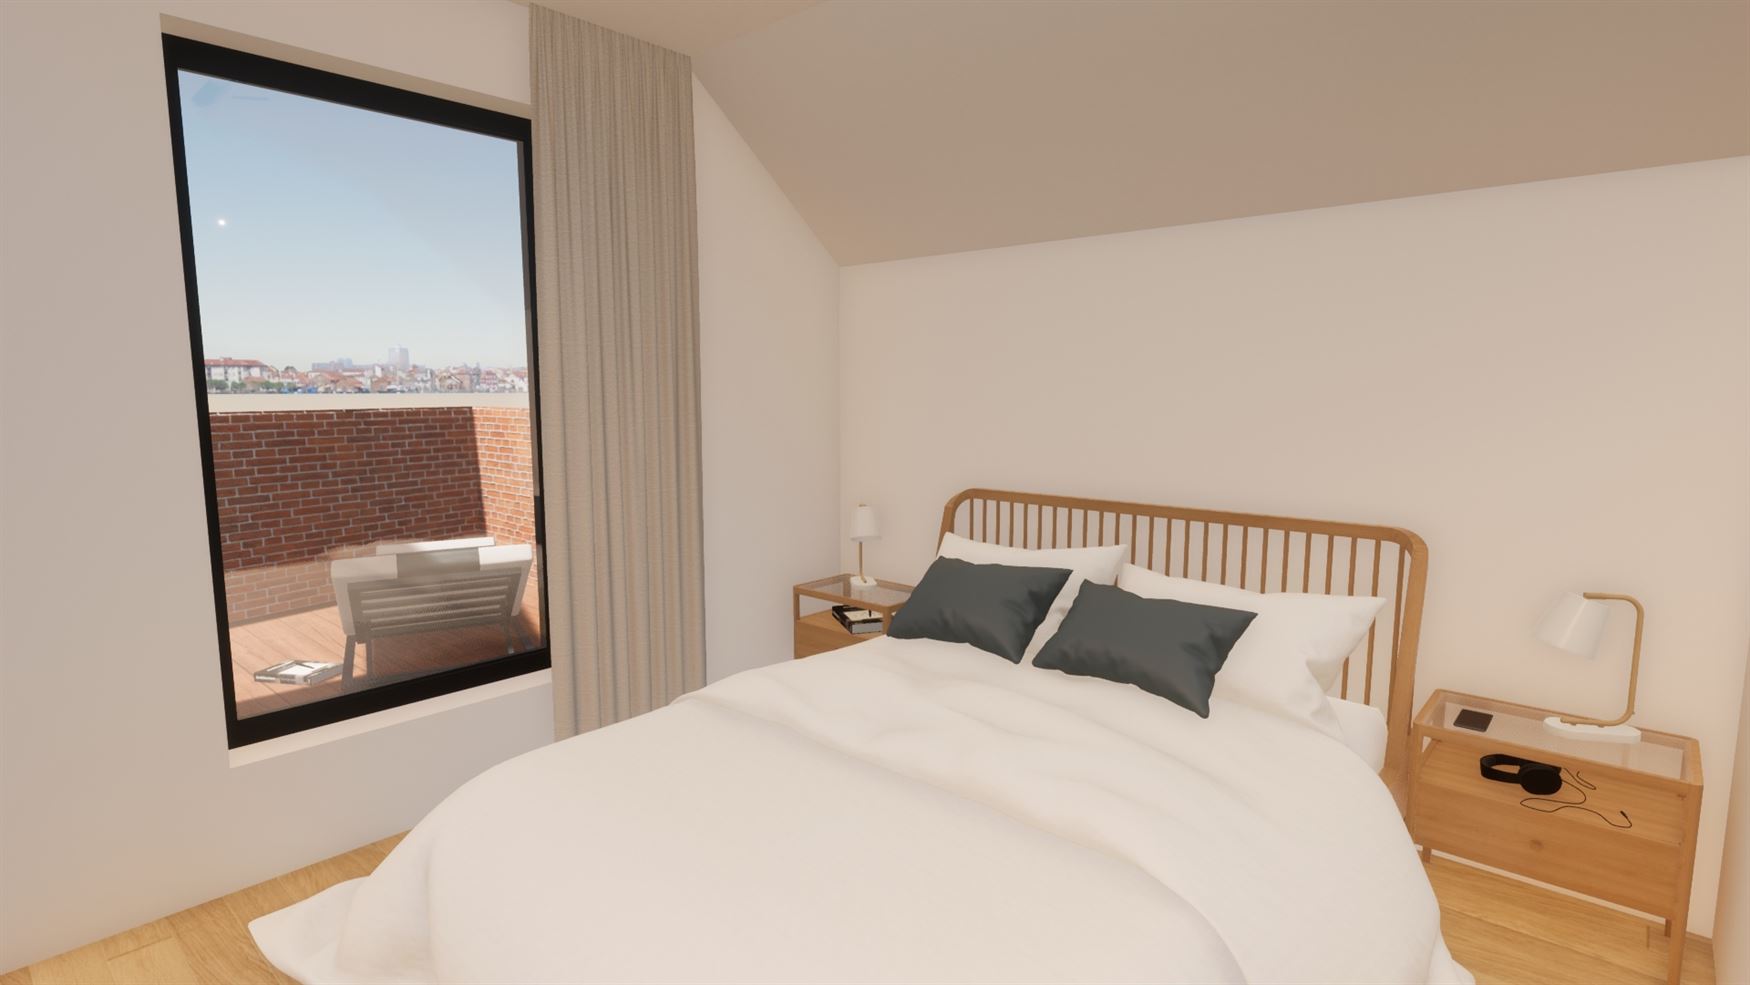 Appartement 113A (108 m²) bevindt zich op het gelijkvloers, heeft 2 slaapkamers en een tuin + terras van 61 m².
Mogelijkheid tot aankoop van een ca...